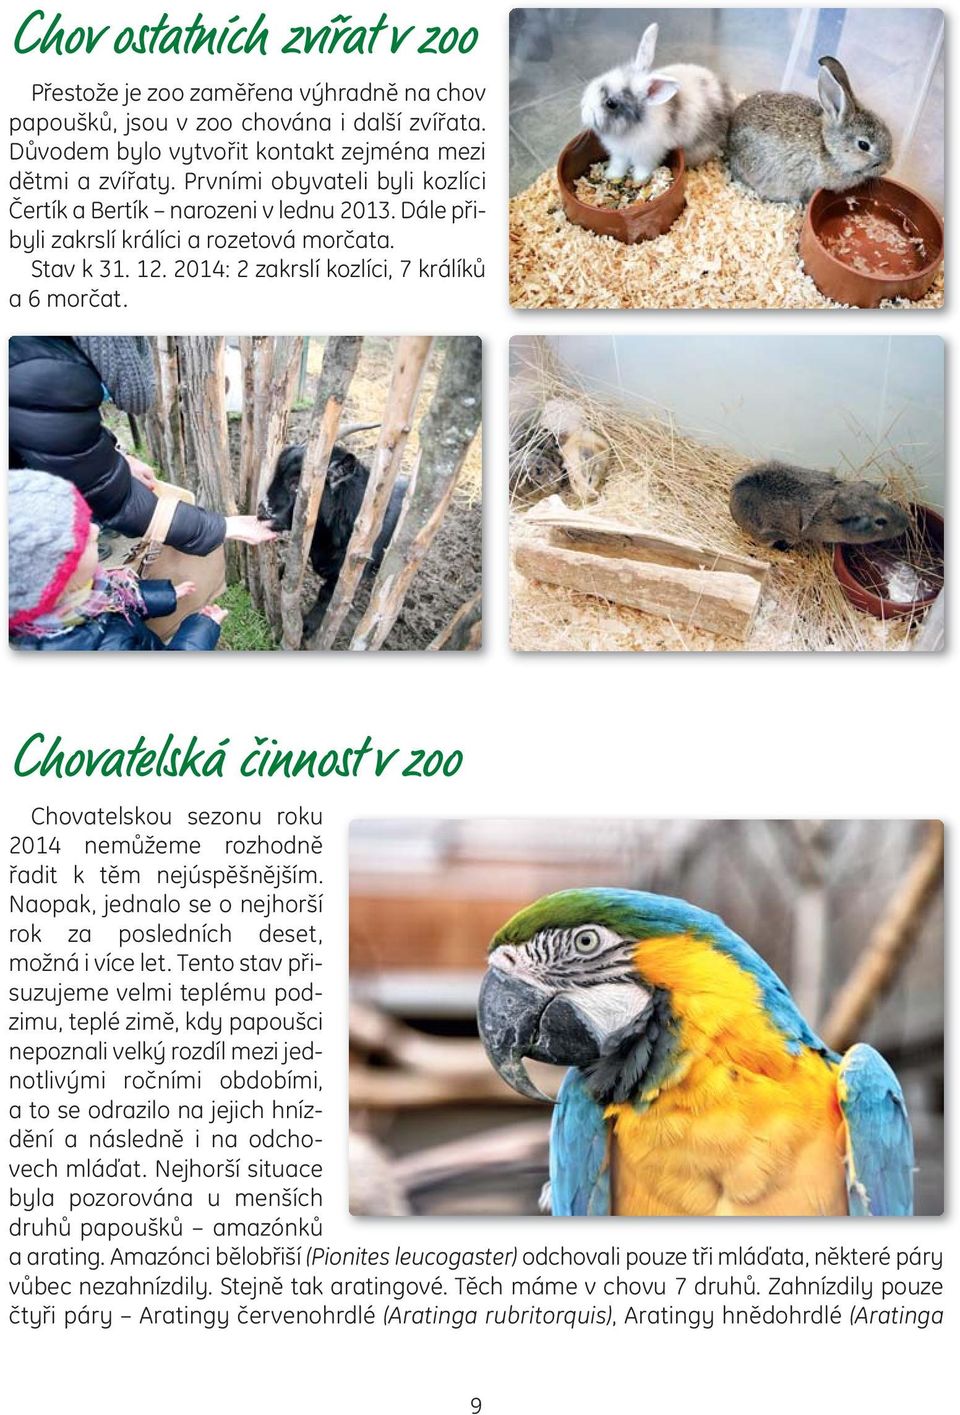 Chovatelská činnost v zoo Chovatelskou sezonu roku 2014 nemůžeme rozhodně řadit k těm nejúspěšnějším. Naopak, jednalo se o nejhorší rok za posledních deset, možná i více let.